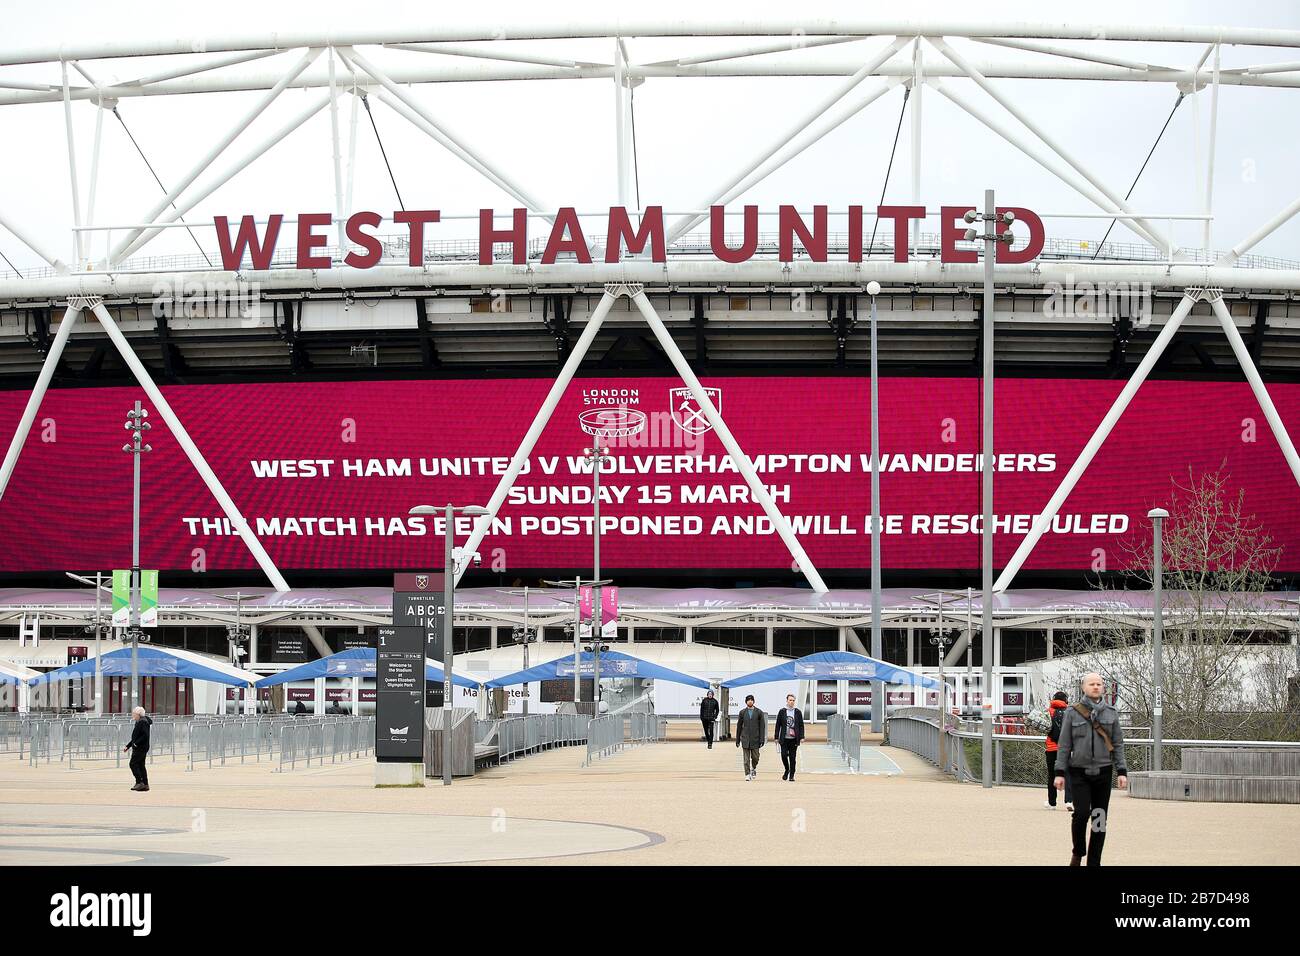 Vue d'un grand écran LED informant les fans du report à l'extérieur du stade de Londres, domicile du club de football West Ham United, suite à l'annonce de vendredi selon laquelle la Premier League a suspendu tous les matches jusqu'au samedi 4 avril 2020. Banque D'Images